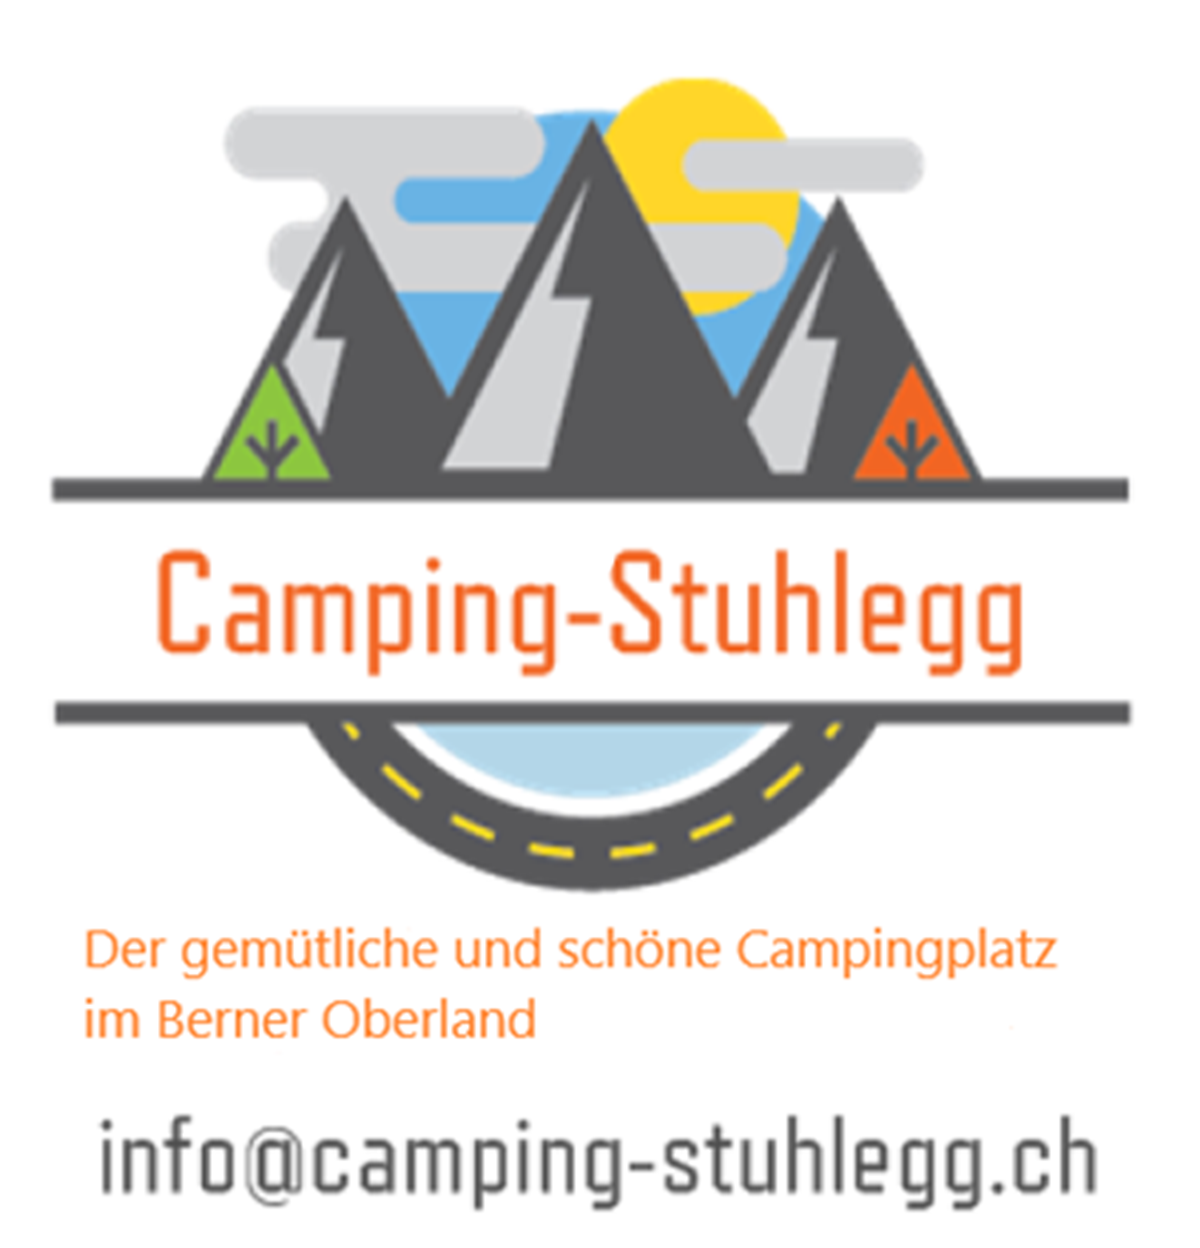 Camping Stuhlegg (1)